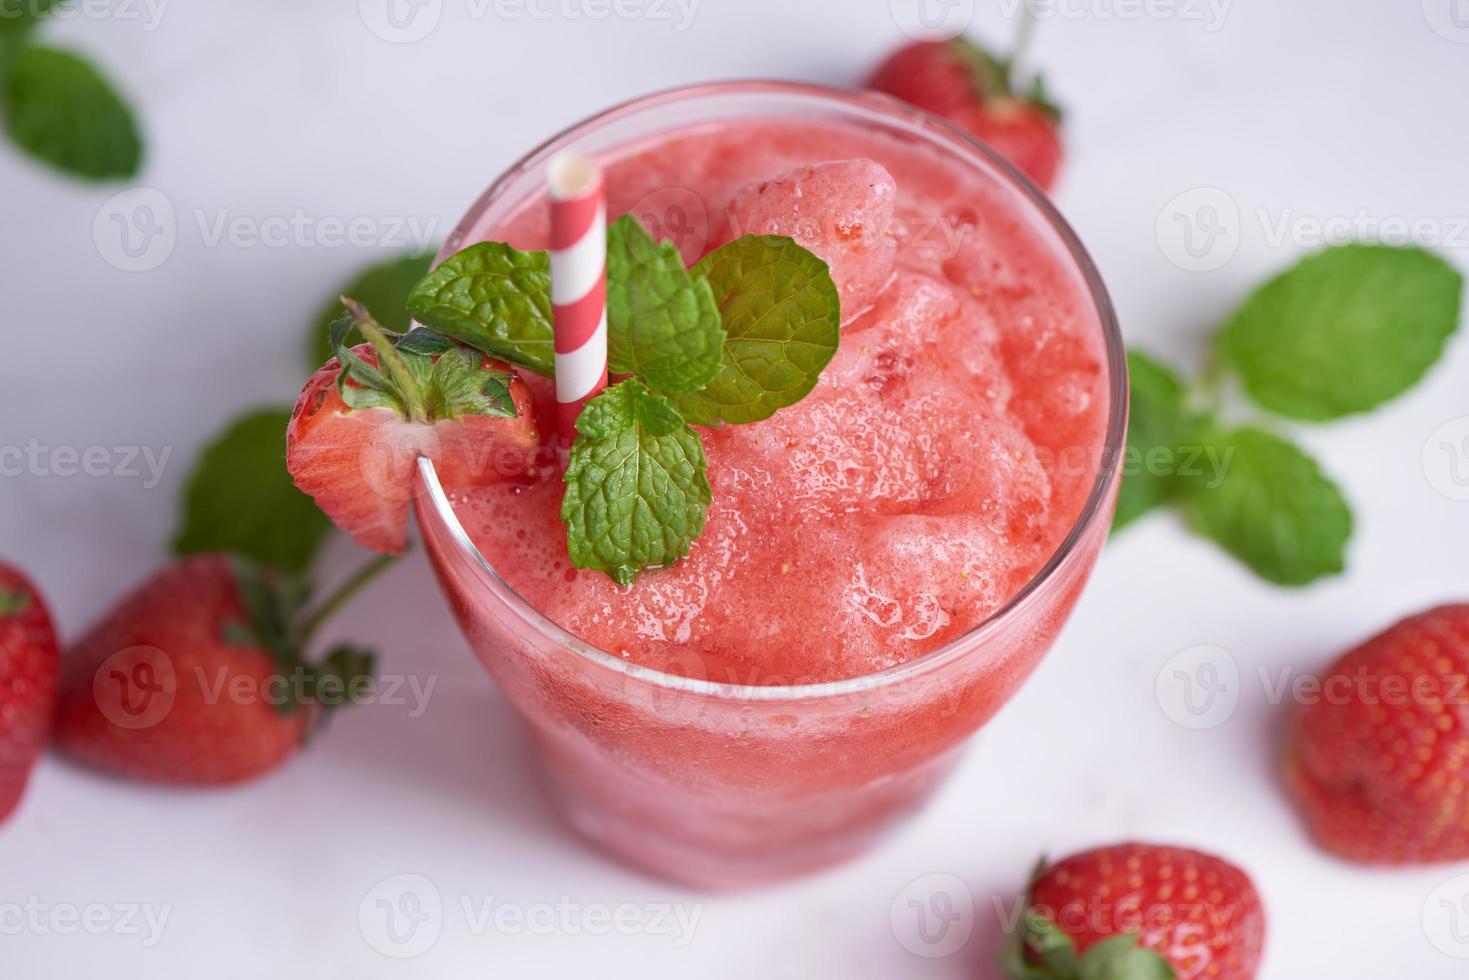 trinken sie smoothies sommererdbeere, köstlicher erdbeer-smoothie, garniert mit frischer erdbeere und minze im glas. Weicher Fokus. schöne vorspeise rosa erdbeere, wohlbefinden und gewichtsverlust konzept foto